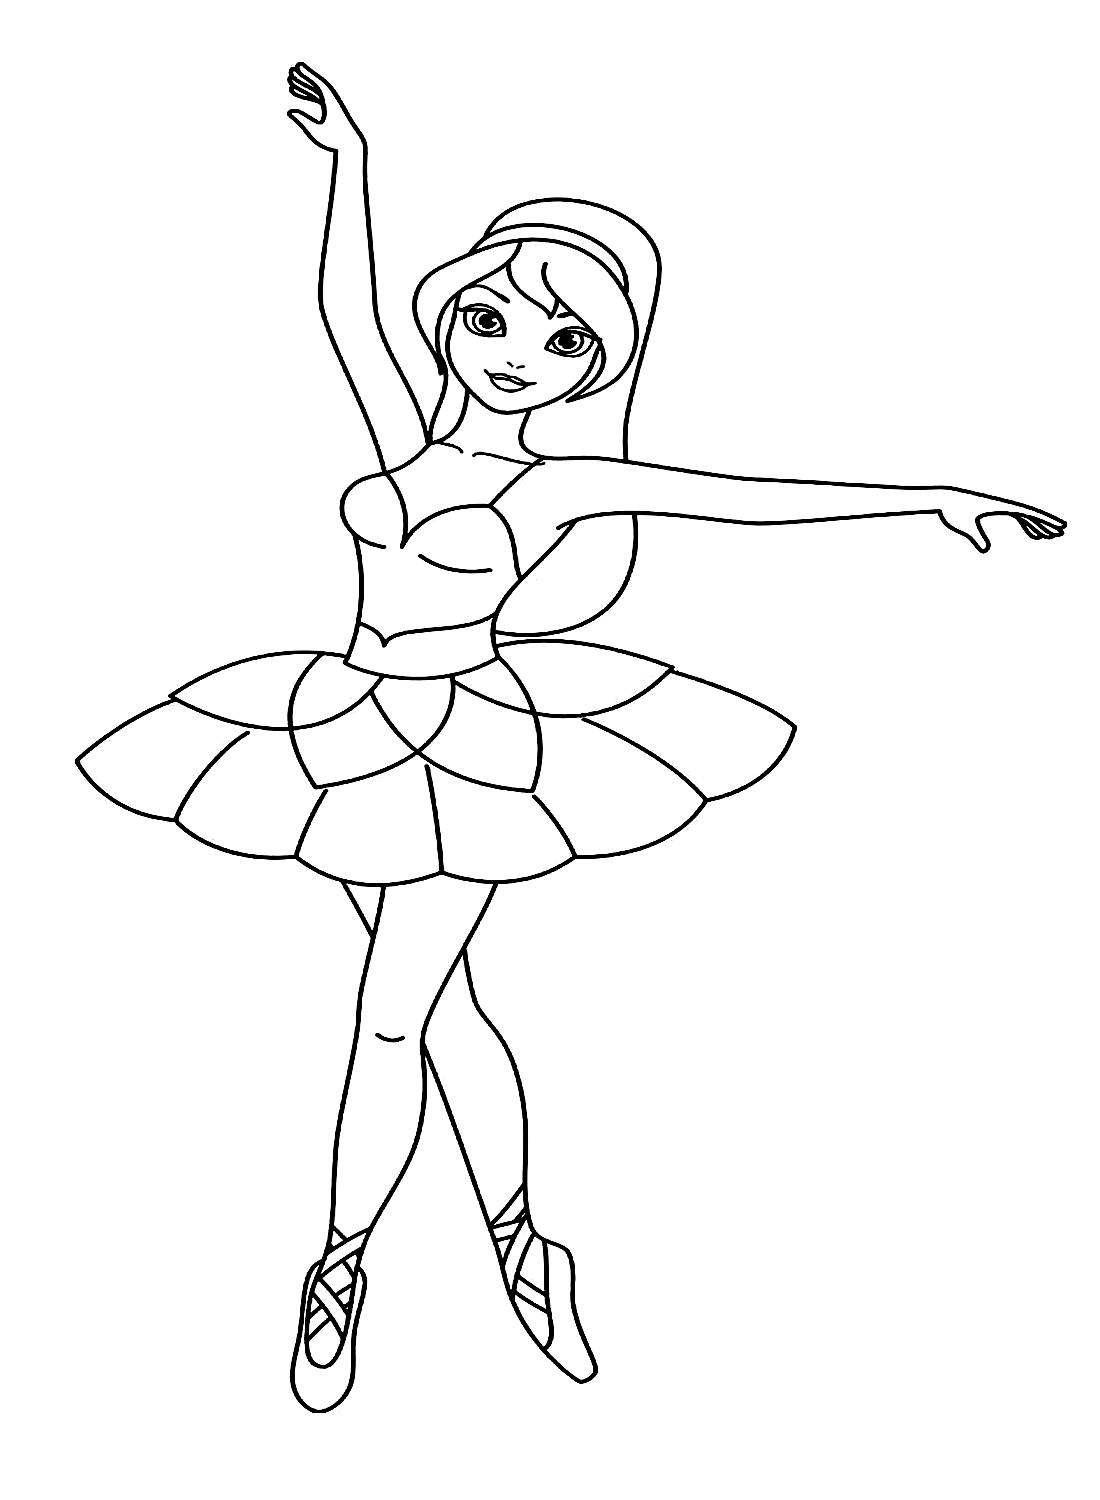 Ein wunderschönes Ballerina-Mädchenbild